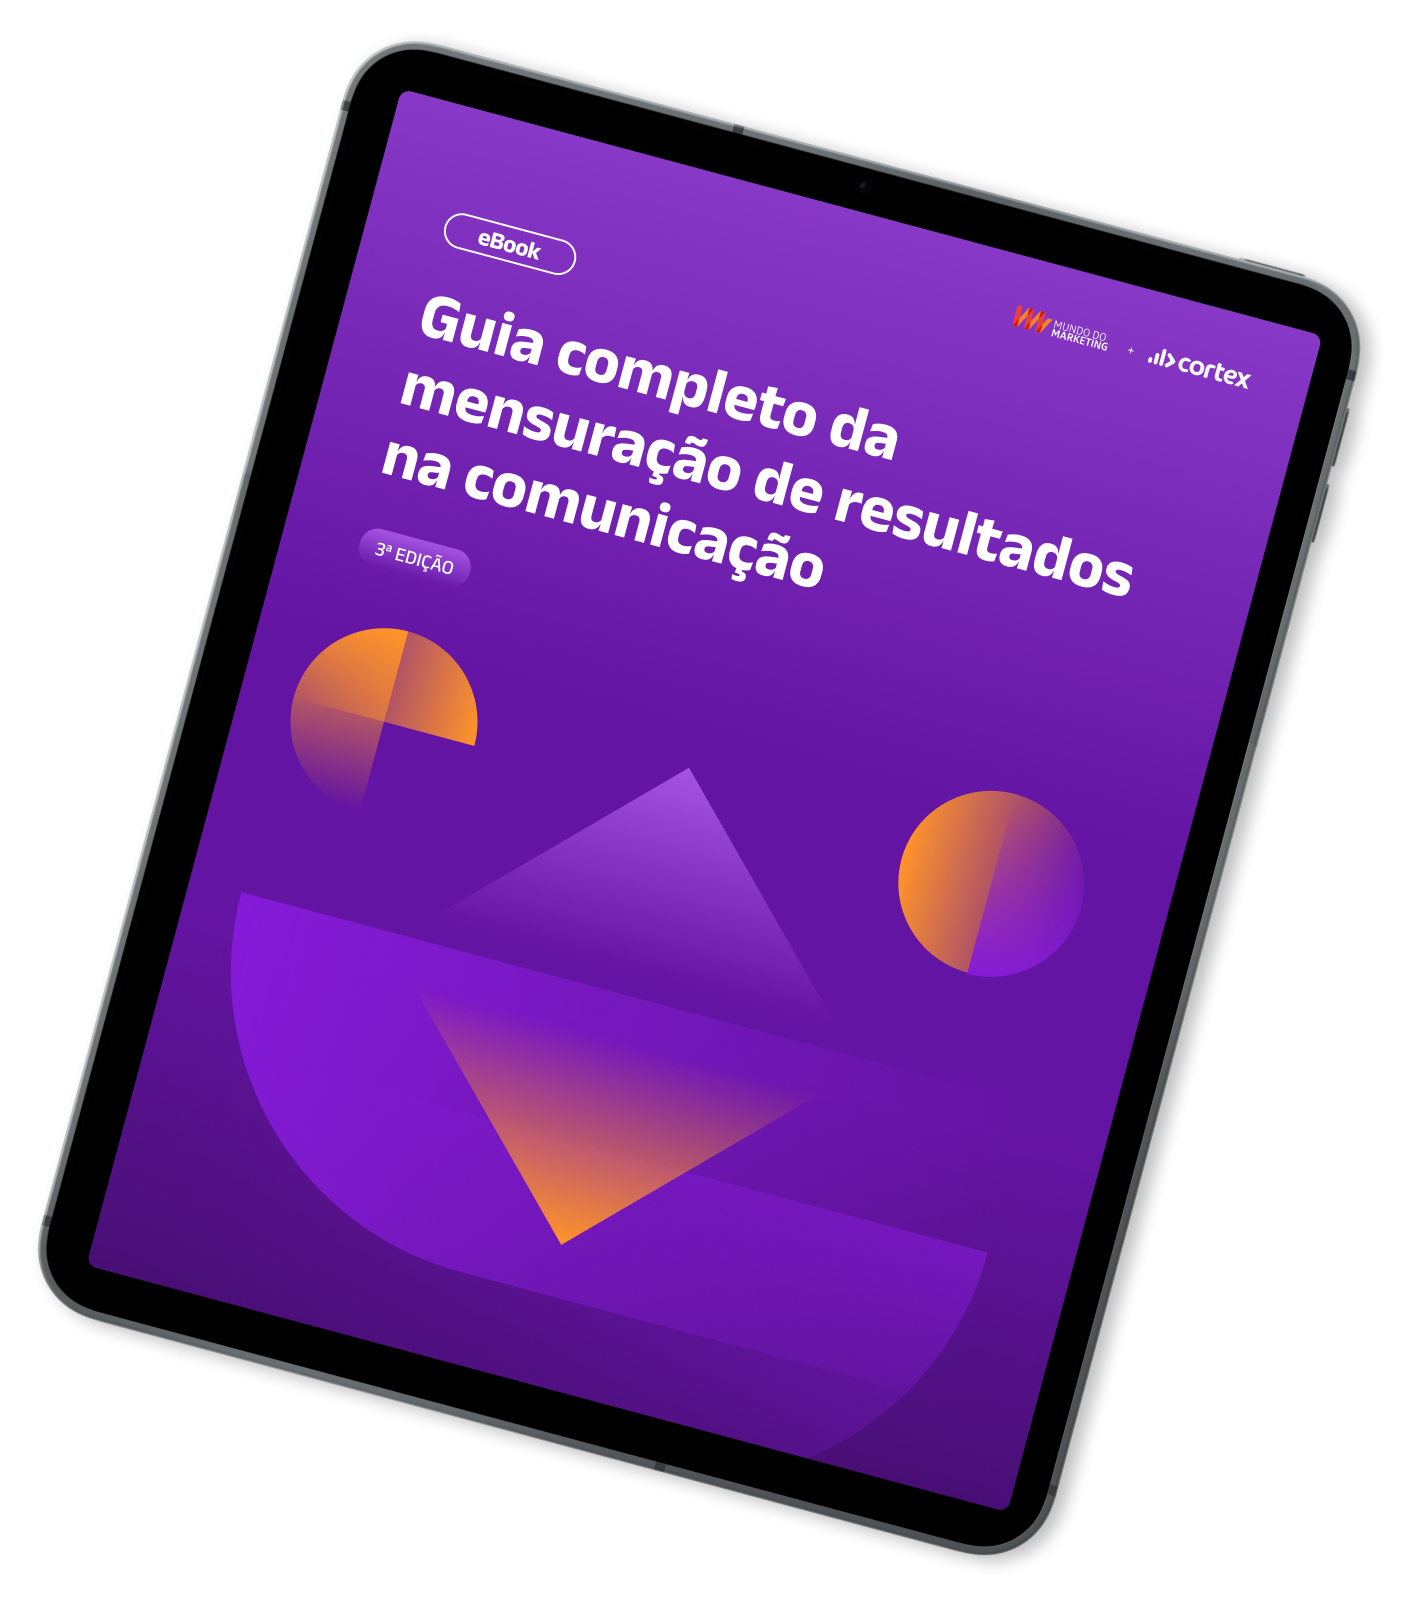 Mockup de Tablet com capa do Ebook - Guia completo da mensuração de resultados na comunicação (1)